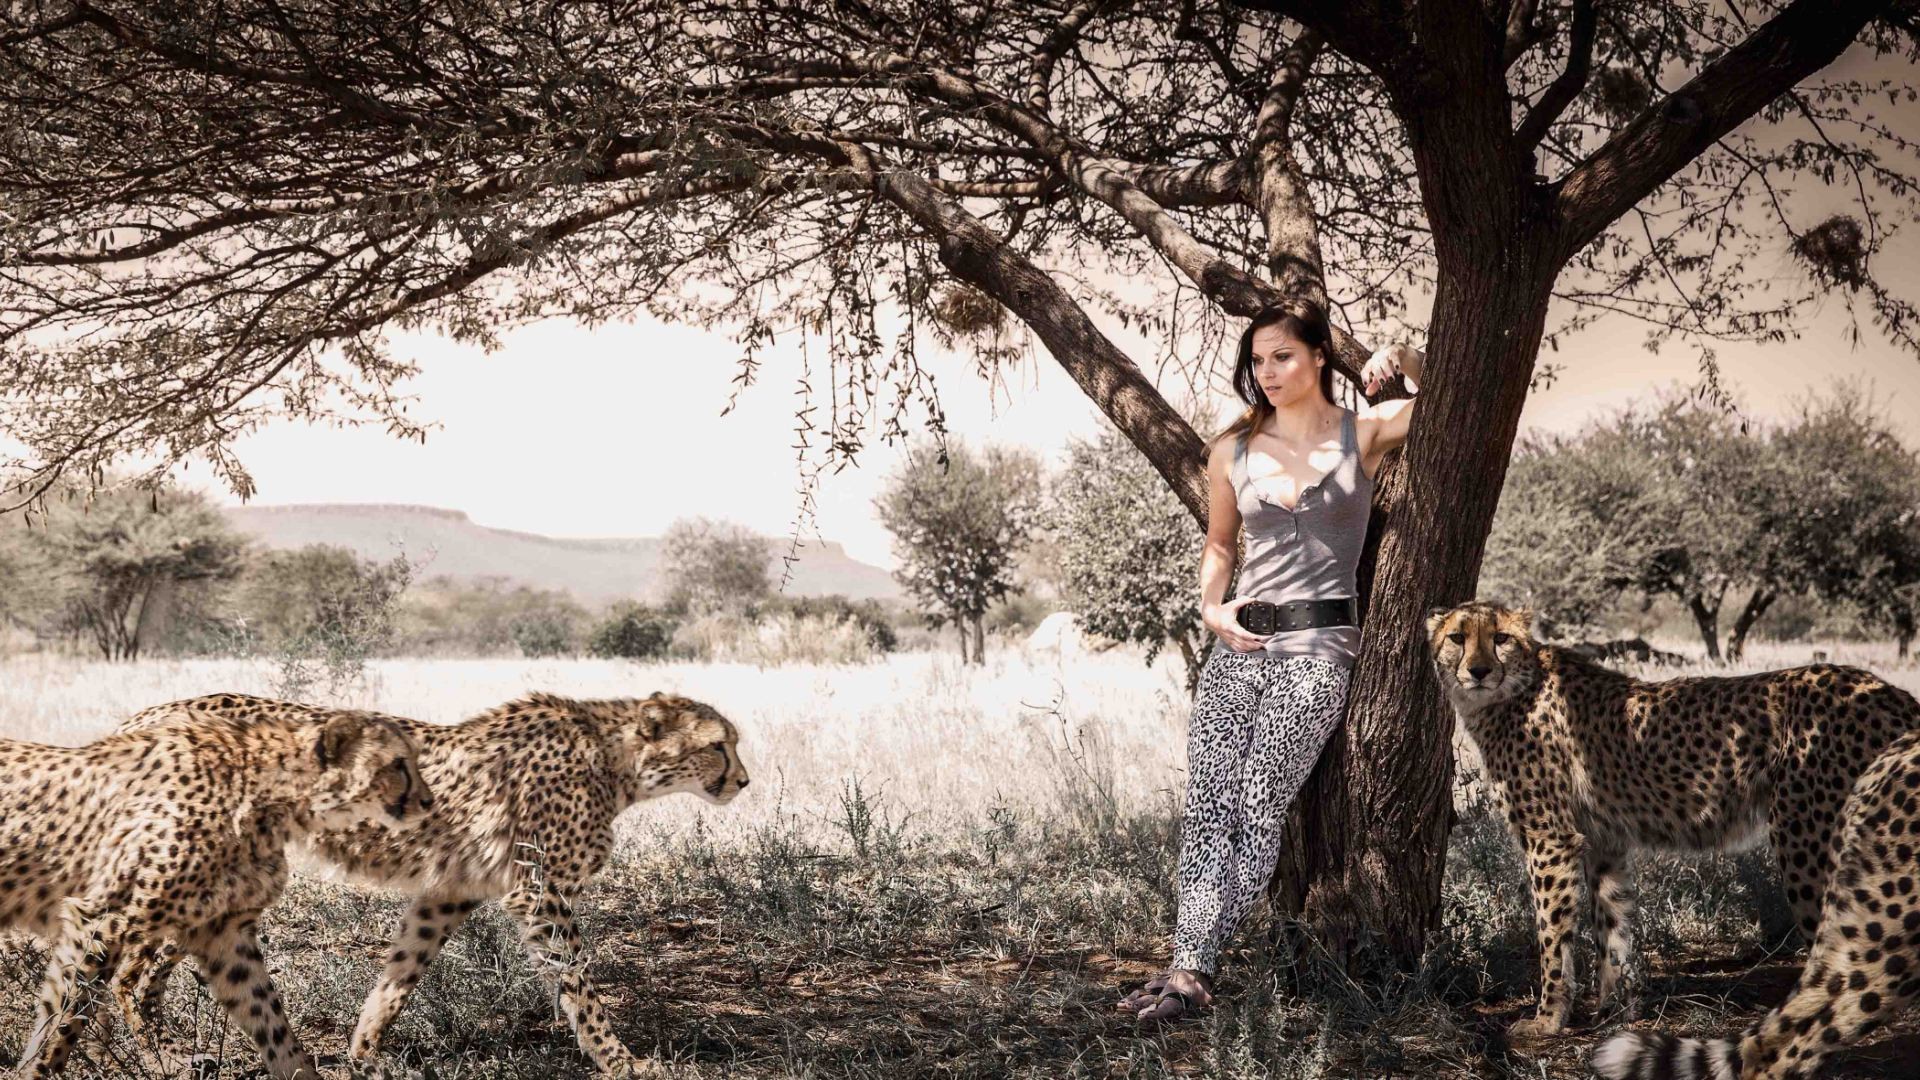 women nature brunette model cheetahs women outdoors Wallpaper